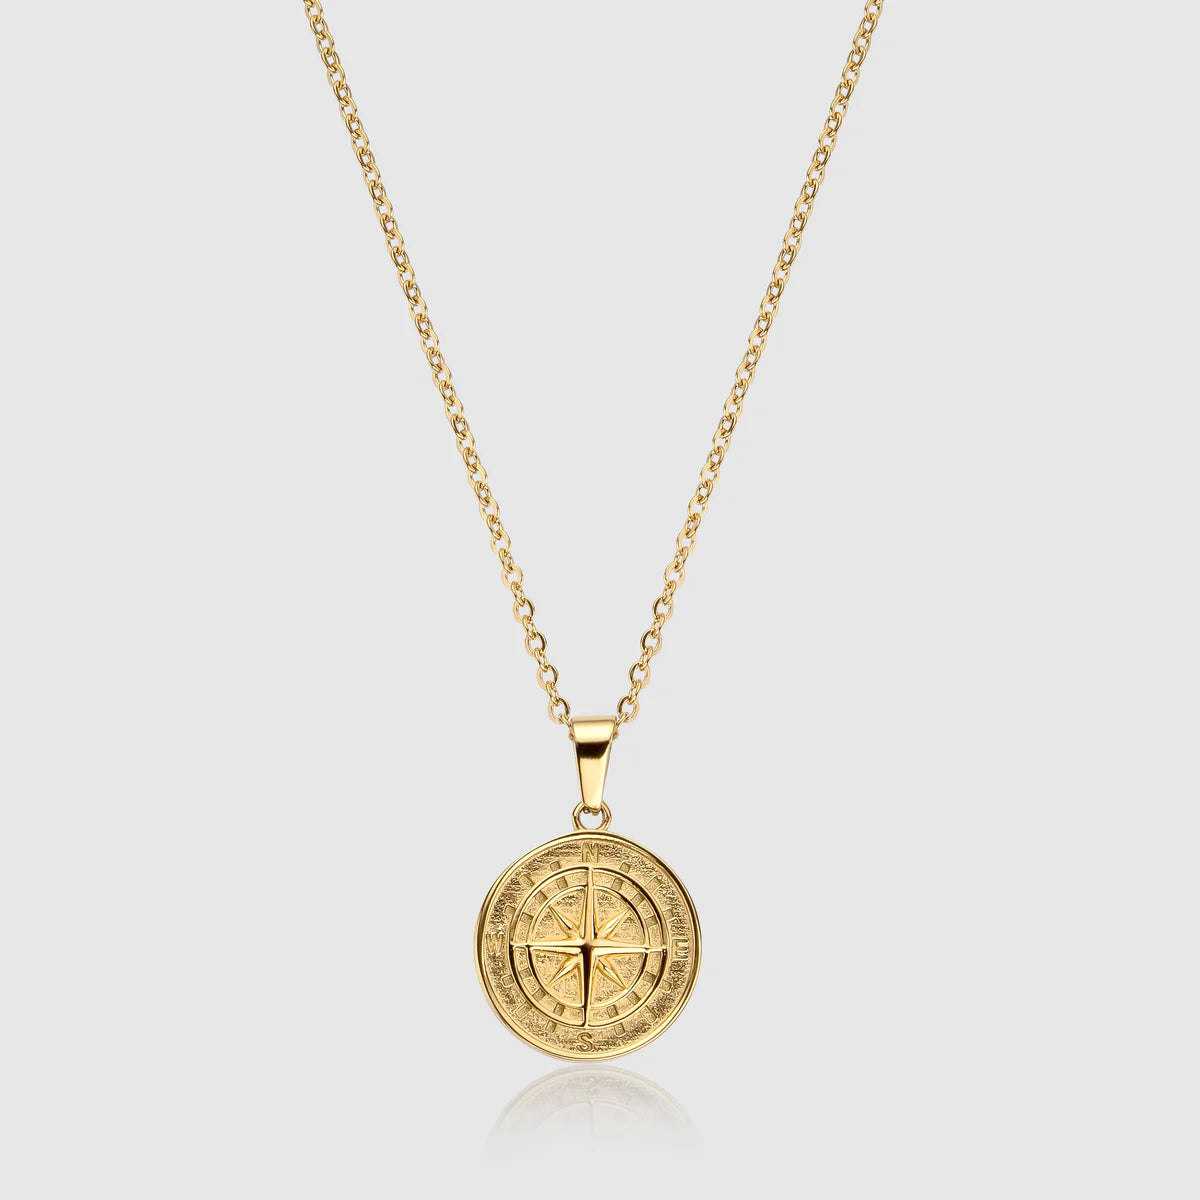 Compass (Gold)